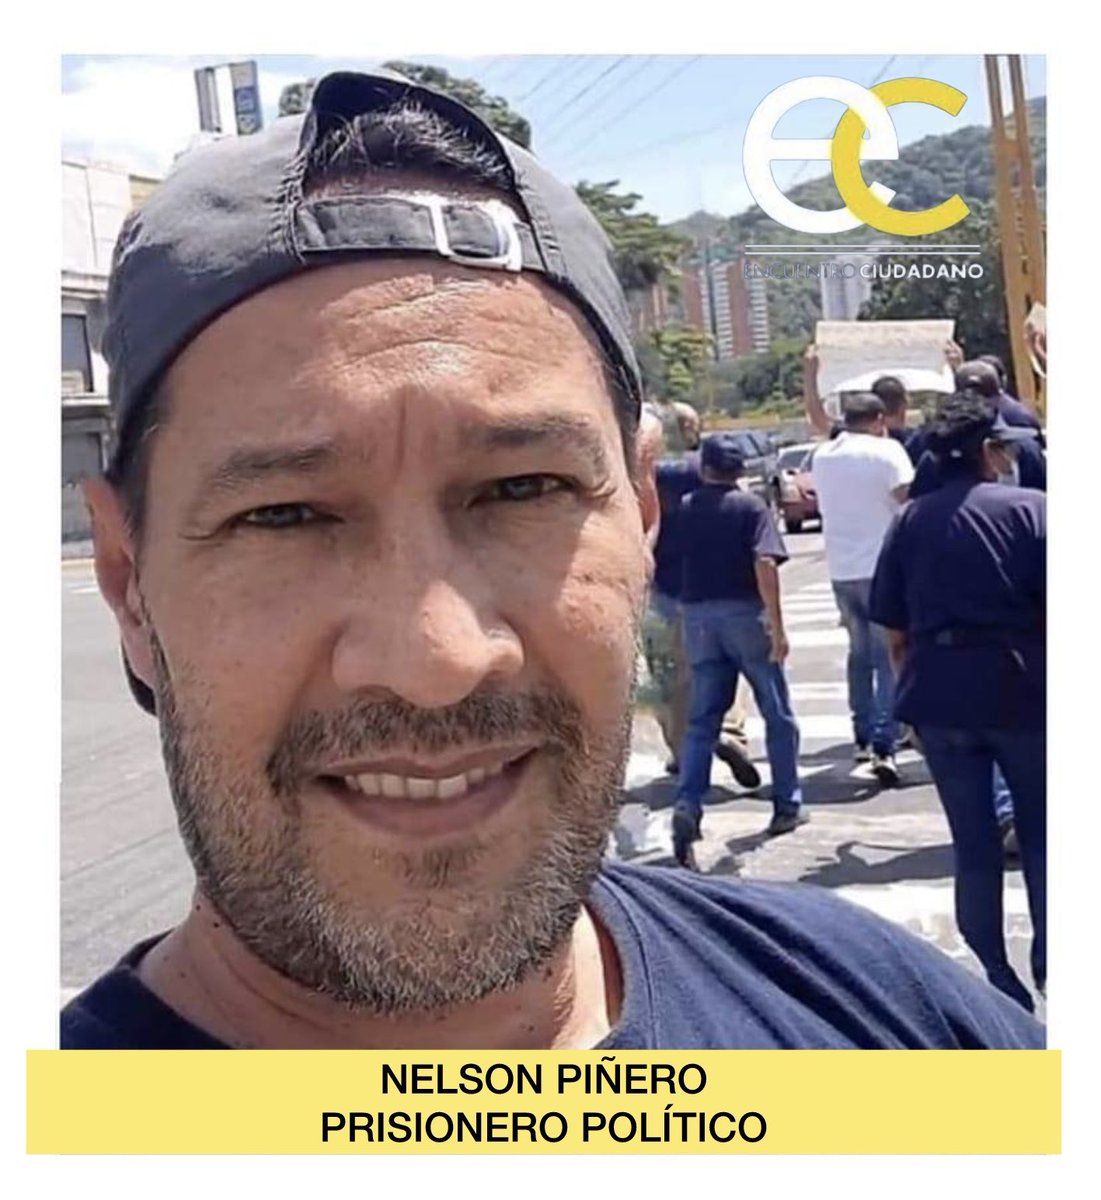 Hoy es el cumpleaños de Nelson Piñero. Él no podrá celebrar porque se encuentra prisionero del régimen desde hace 168 días, injustamente detenido por atreverse a opinar. Él merece libertad. Nuestro compromiso es seguir luchando por la defensa de los DDHH, la libertad de la nación…